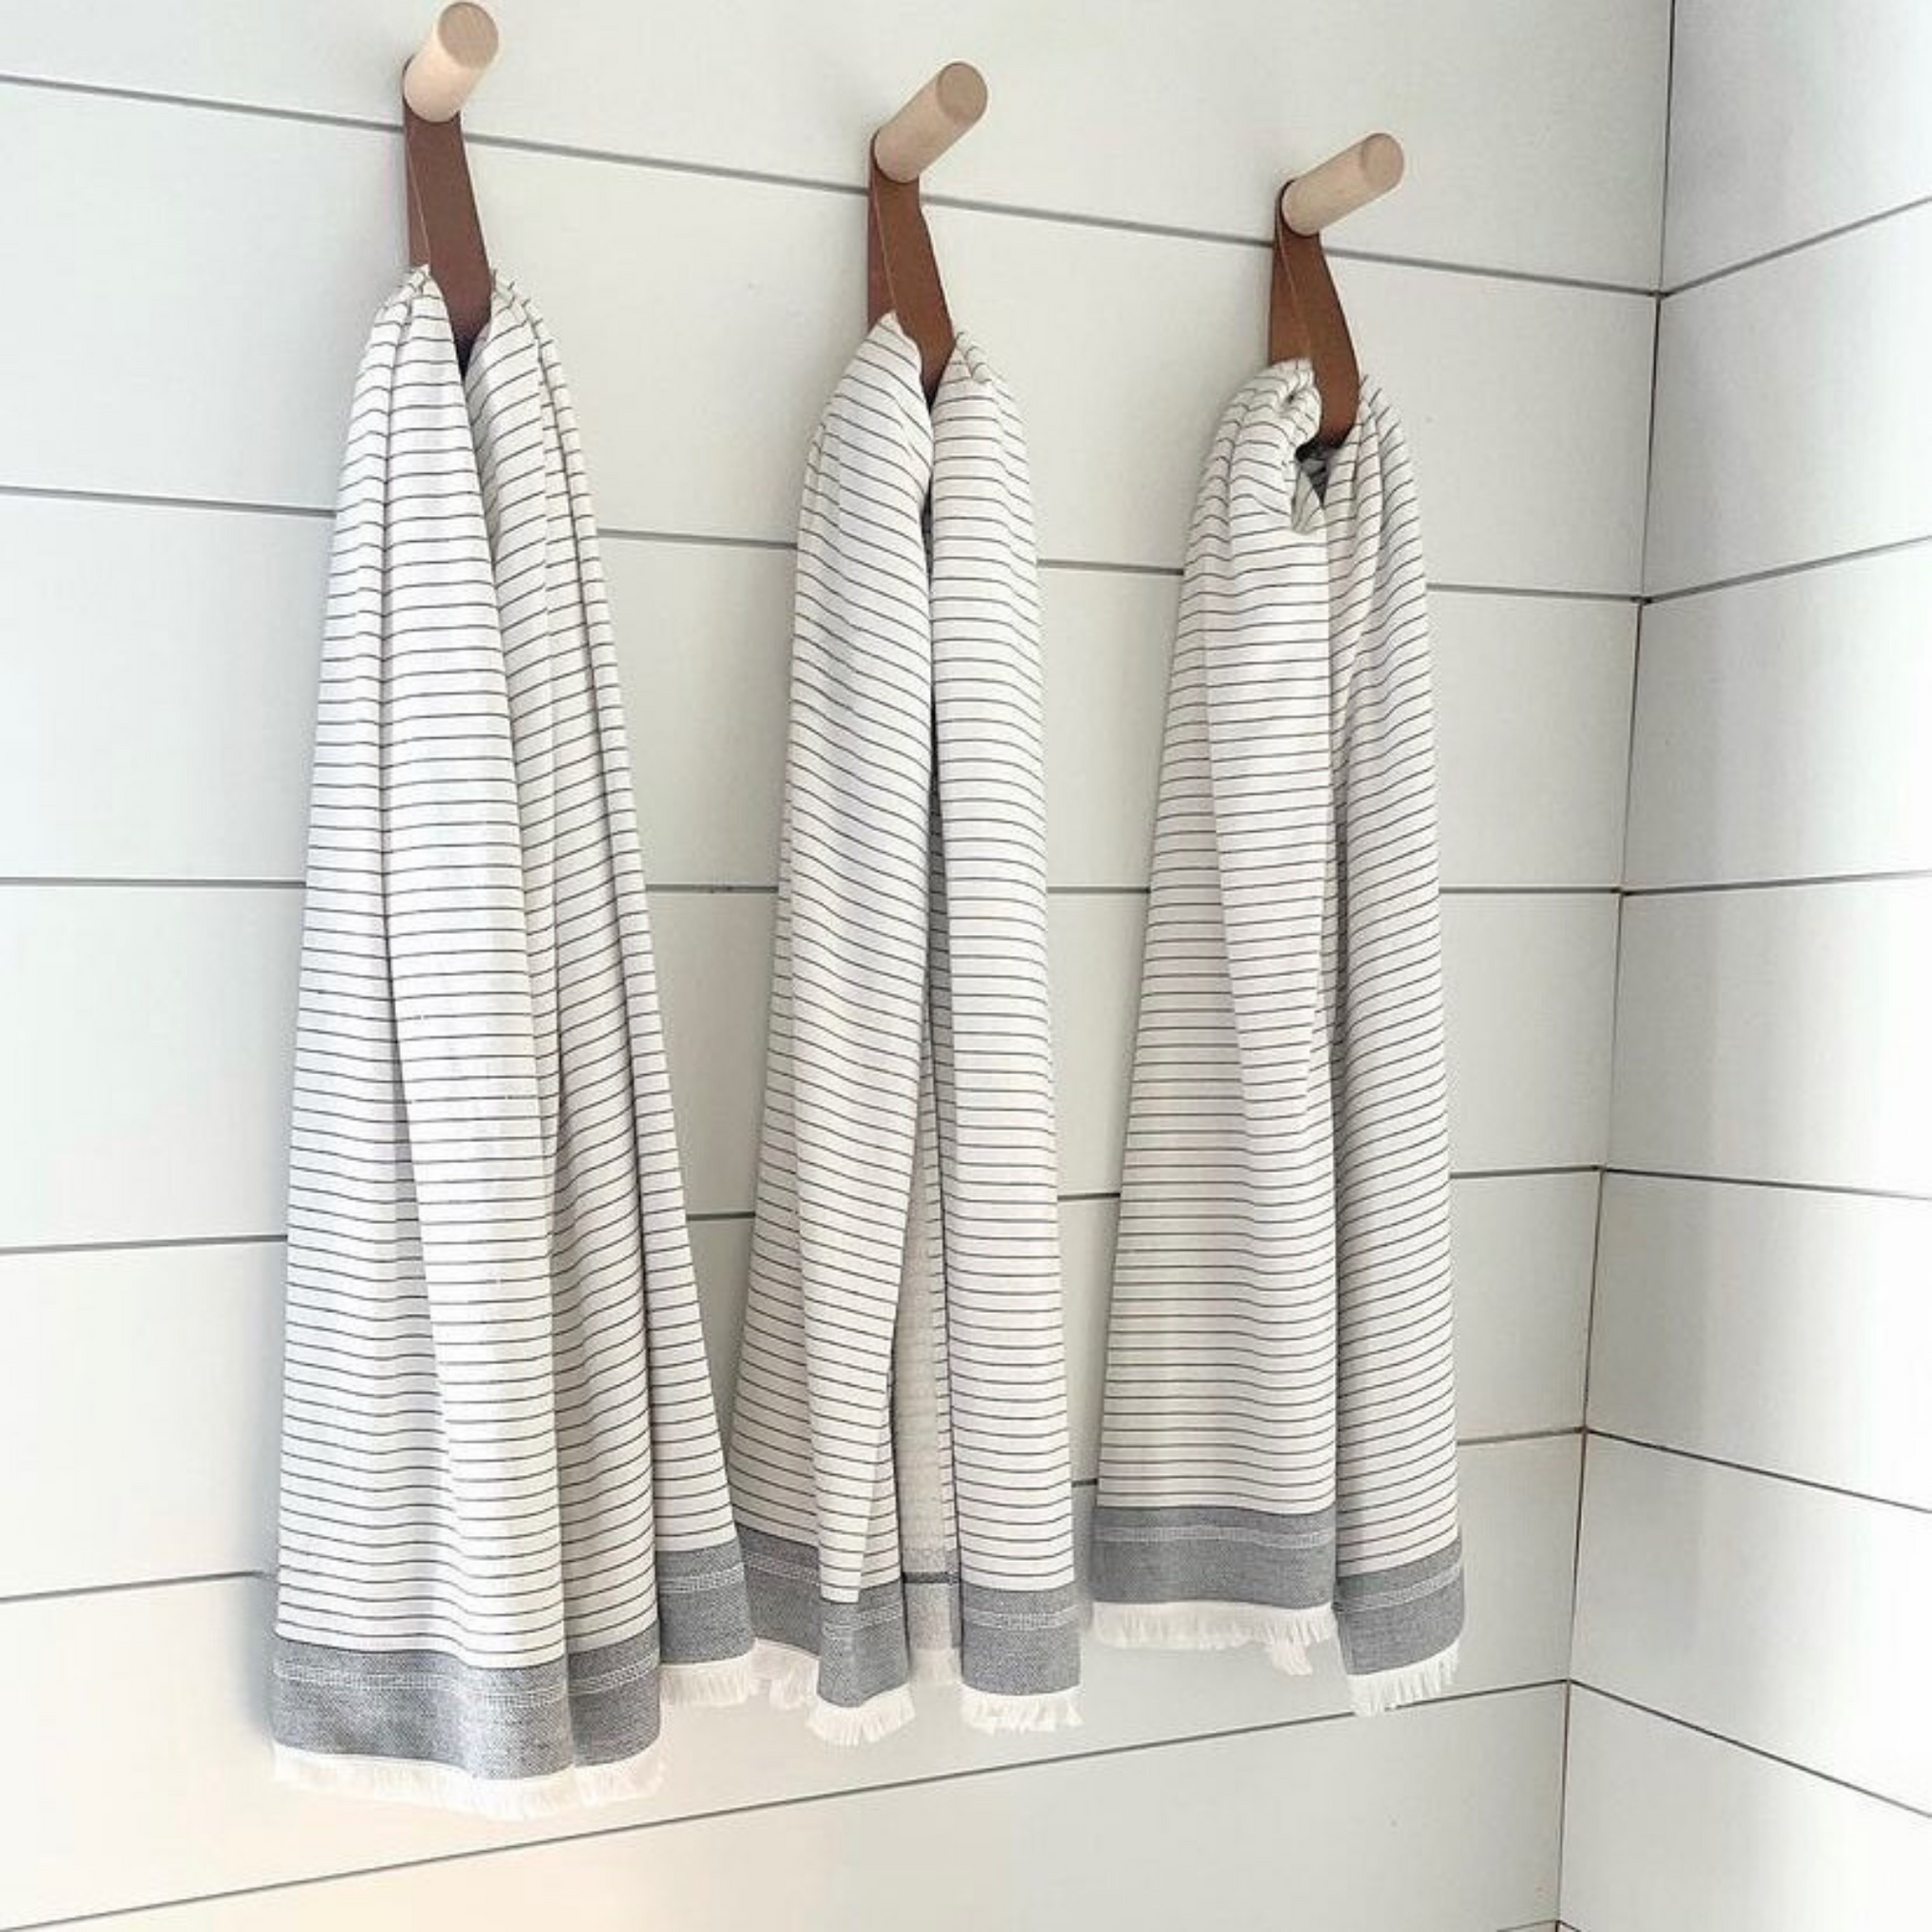 Santorini Turkish Towel Set – Olive & Loom